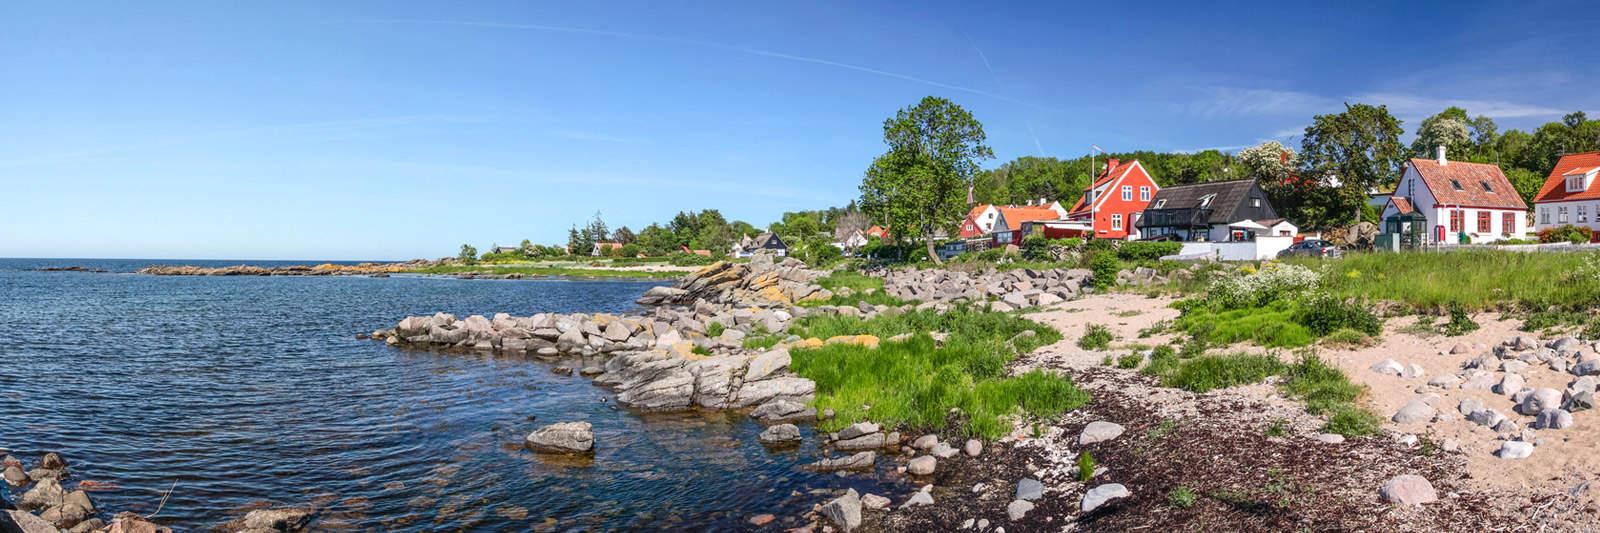 45 Ferienwohnungen und Ferienhäuser am Grenå Strand - tourist-online.de